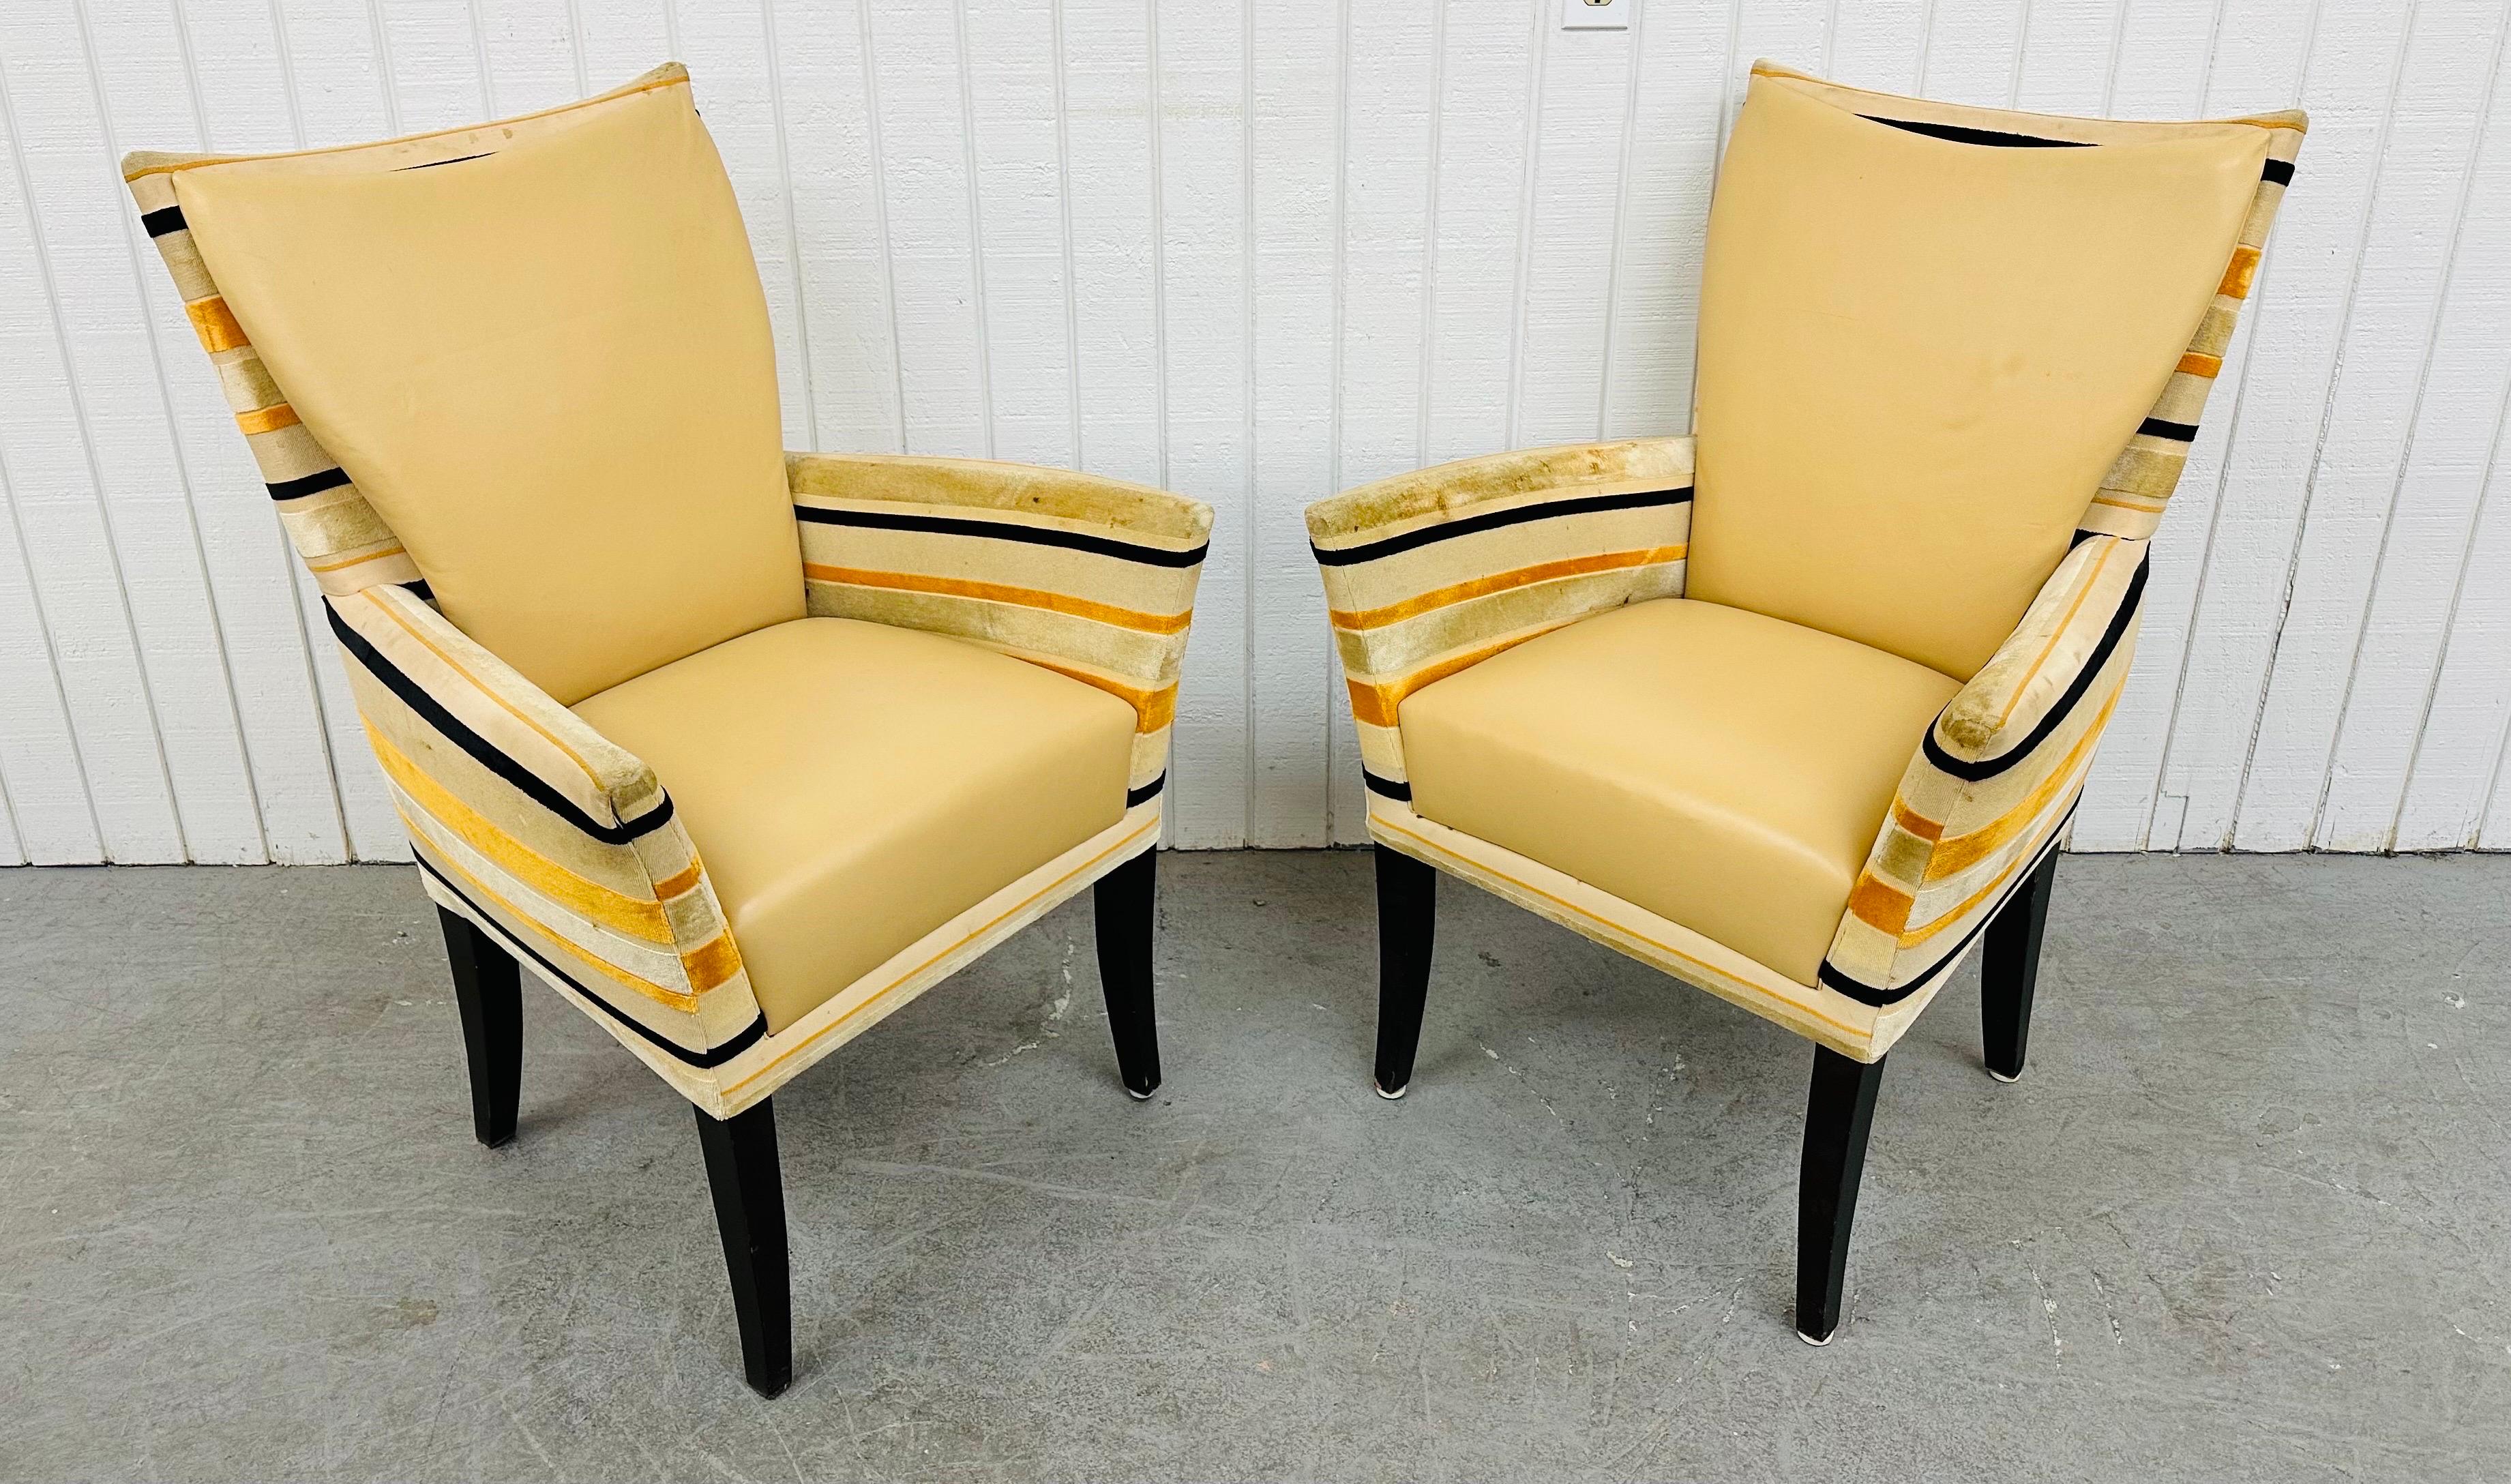 Diese Auflistung ist für ein Paar von Vintage Deco-Stil Lounge-Stühle. Mit geradlinigem Design, Rückenlehnen/Sitzkissen aus Vinyl, gestreiften Polsterrahmen, konischen Holzbeinen und einer soliden Struktur. Dies ist eine außergewöhnliche Kombination